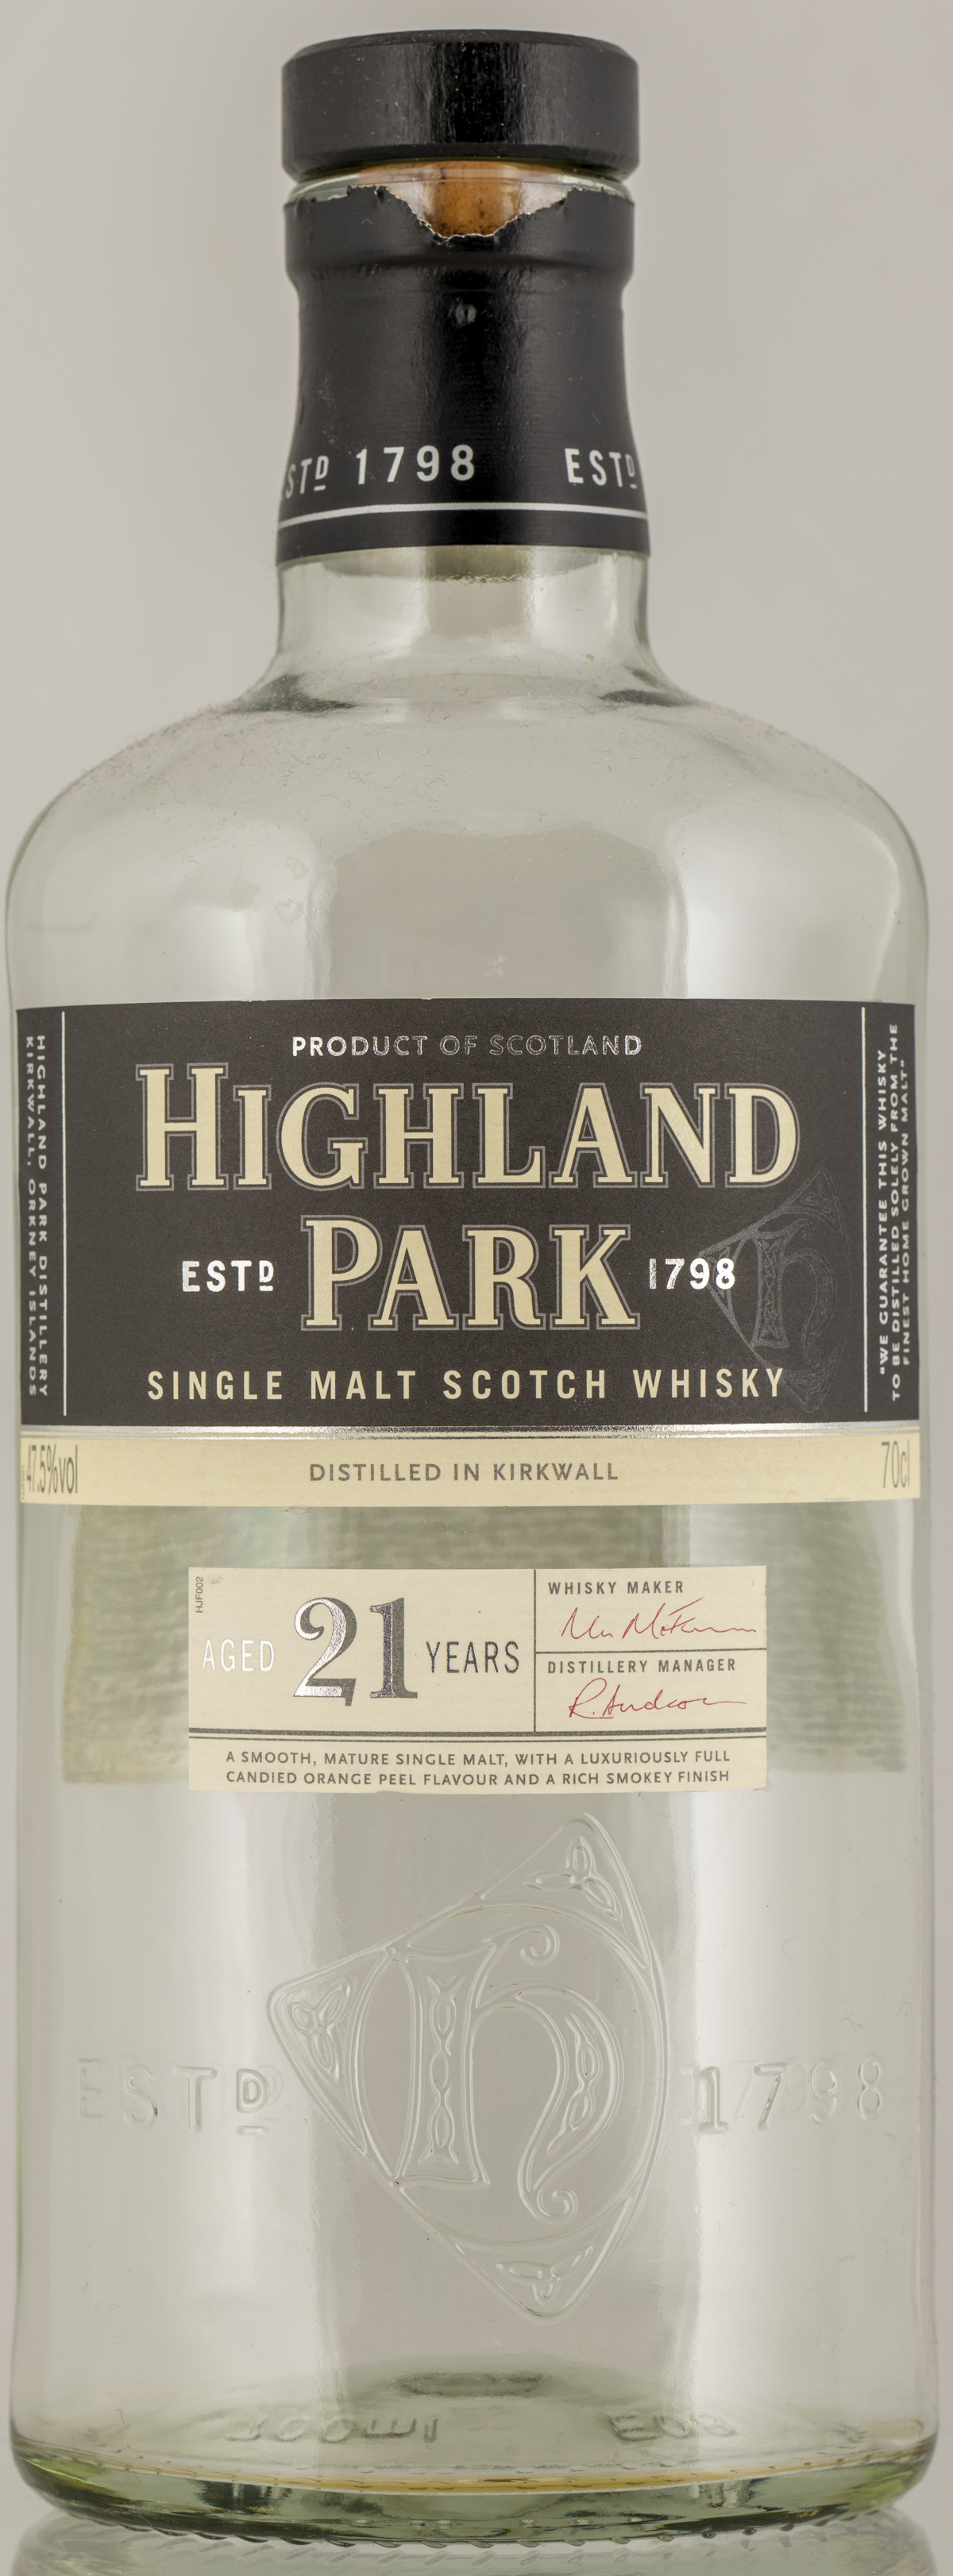 Billede: PHC_2588 - Highland Park 21 (1st edition) - bottle front.jpg